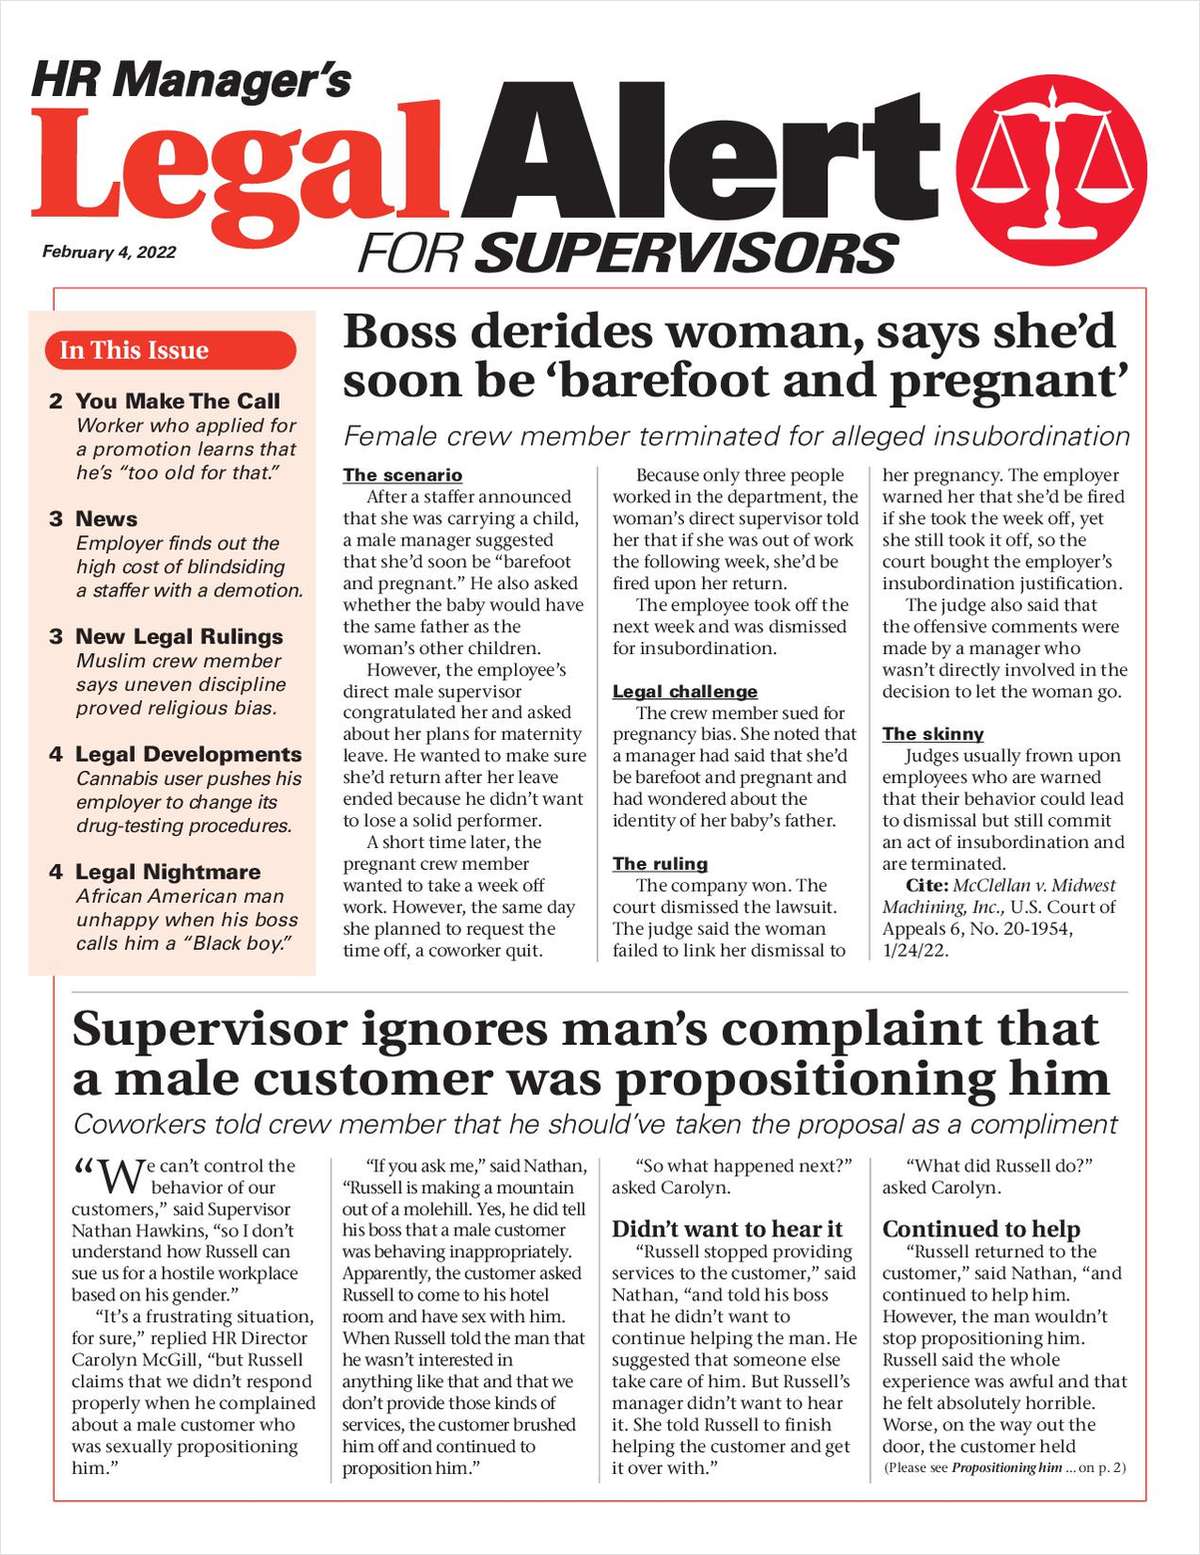 HR Manager's Legal Alert for Supervisors Newsletter: February 4 Edition